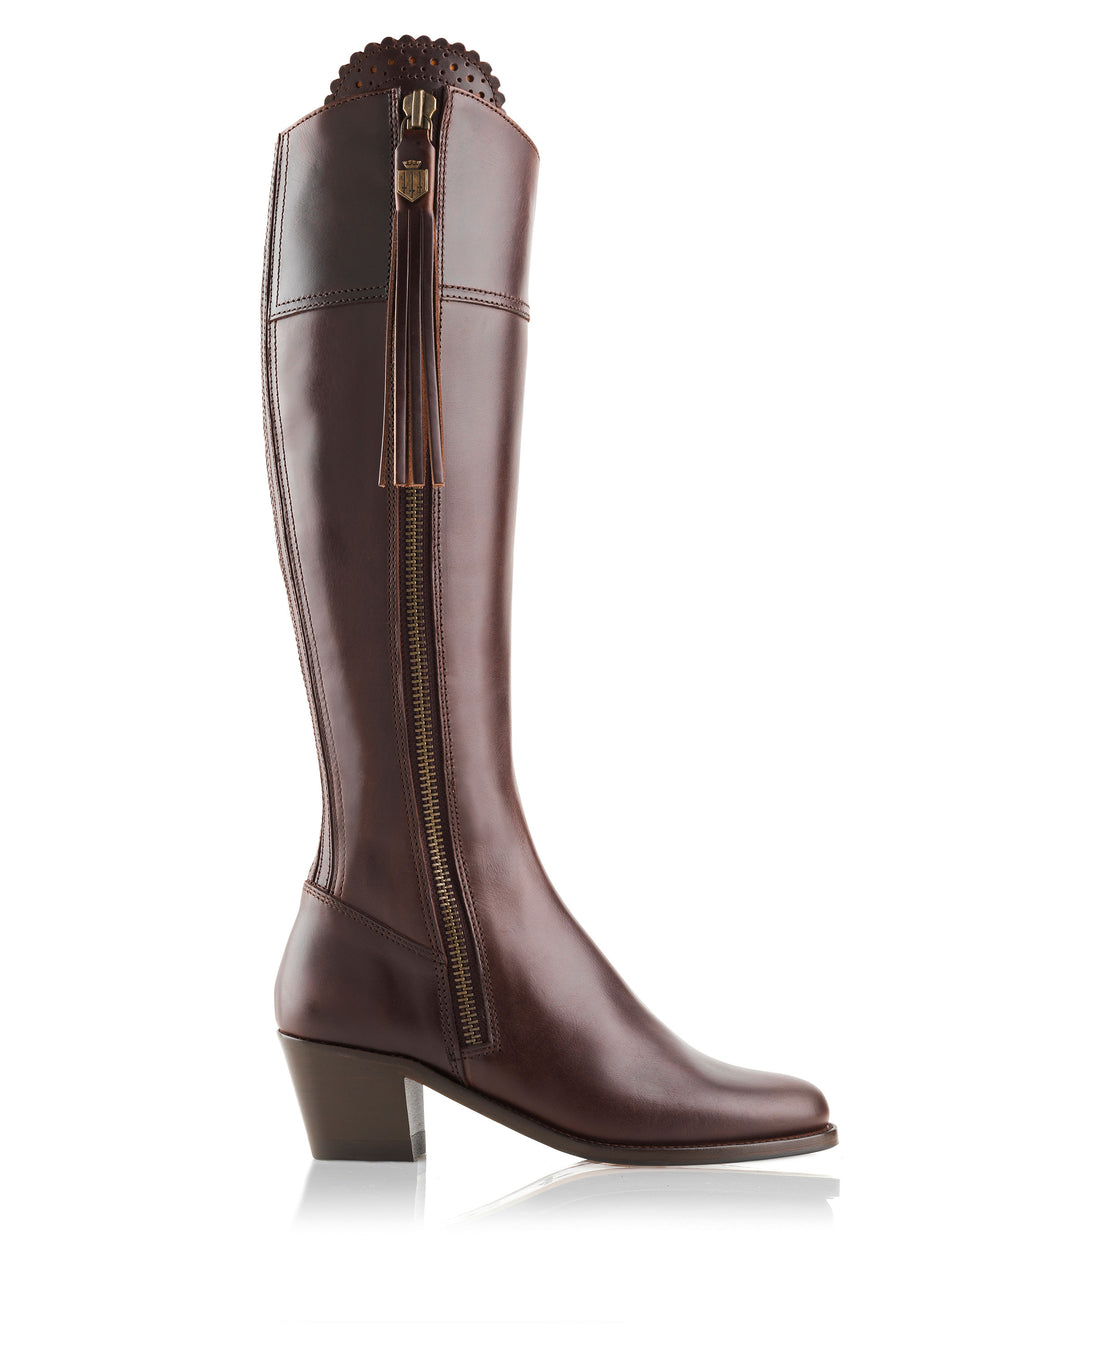 Regina Heeled Boot - Mahogany Leather